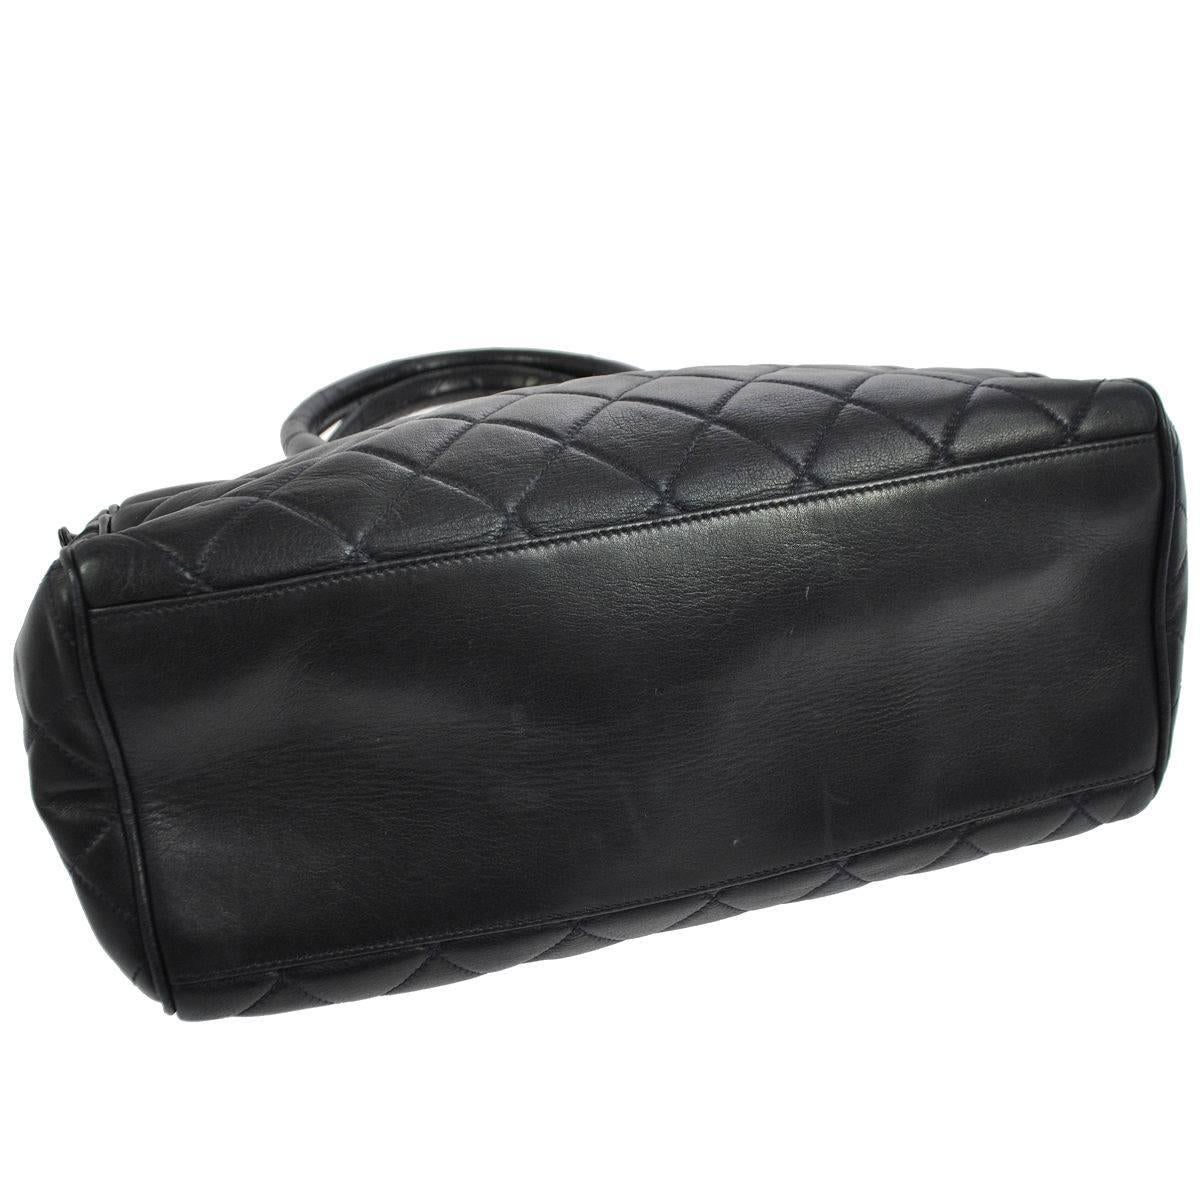 Chanel Vintage Black Lambskin Carryall Large Travel Shopper Tote Shoulder Bag 1